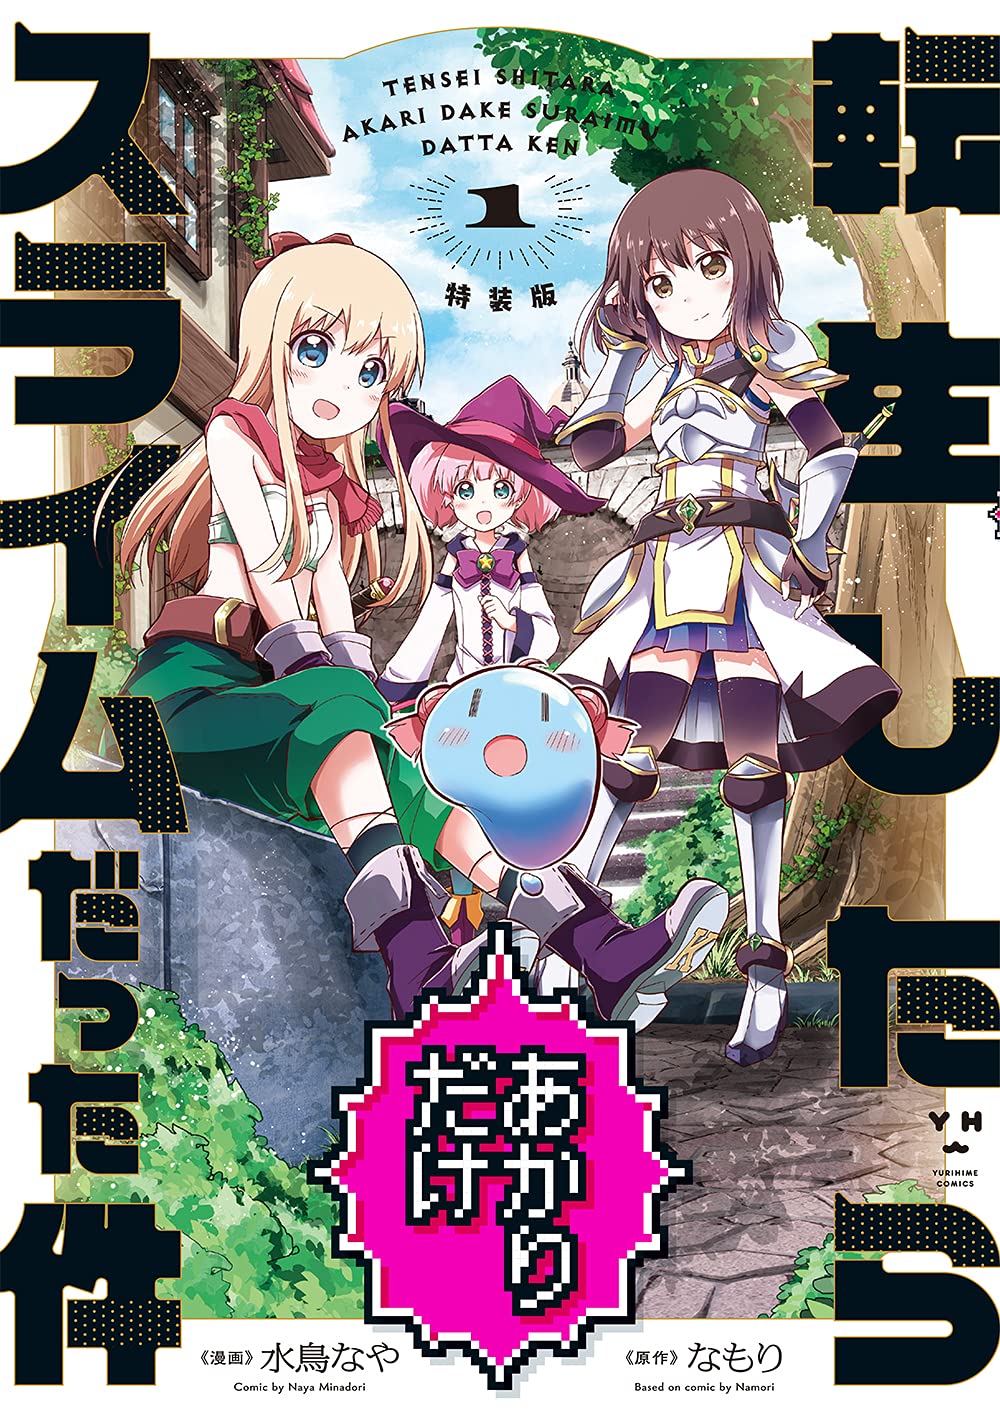 Manga Volume 7, Tensei Shitara Slime Datta Ken Wiki